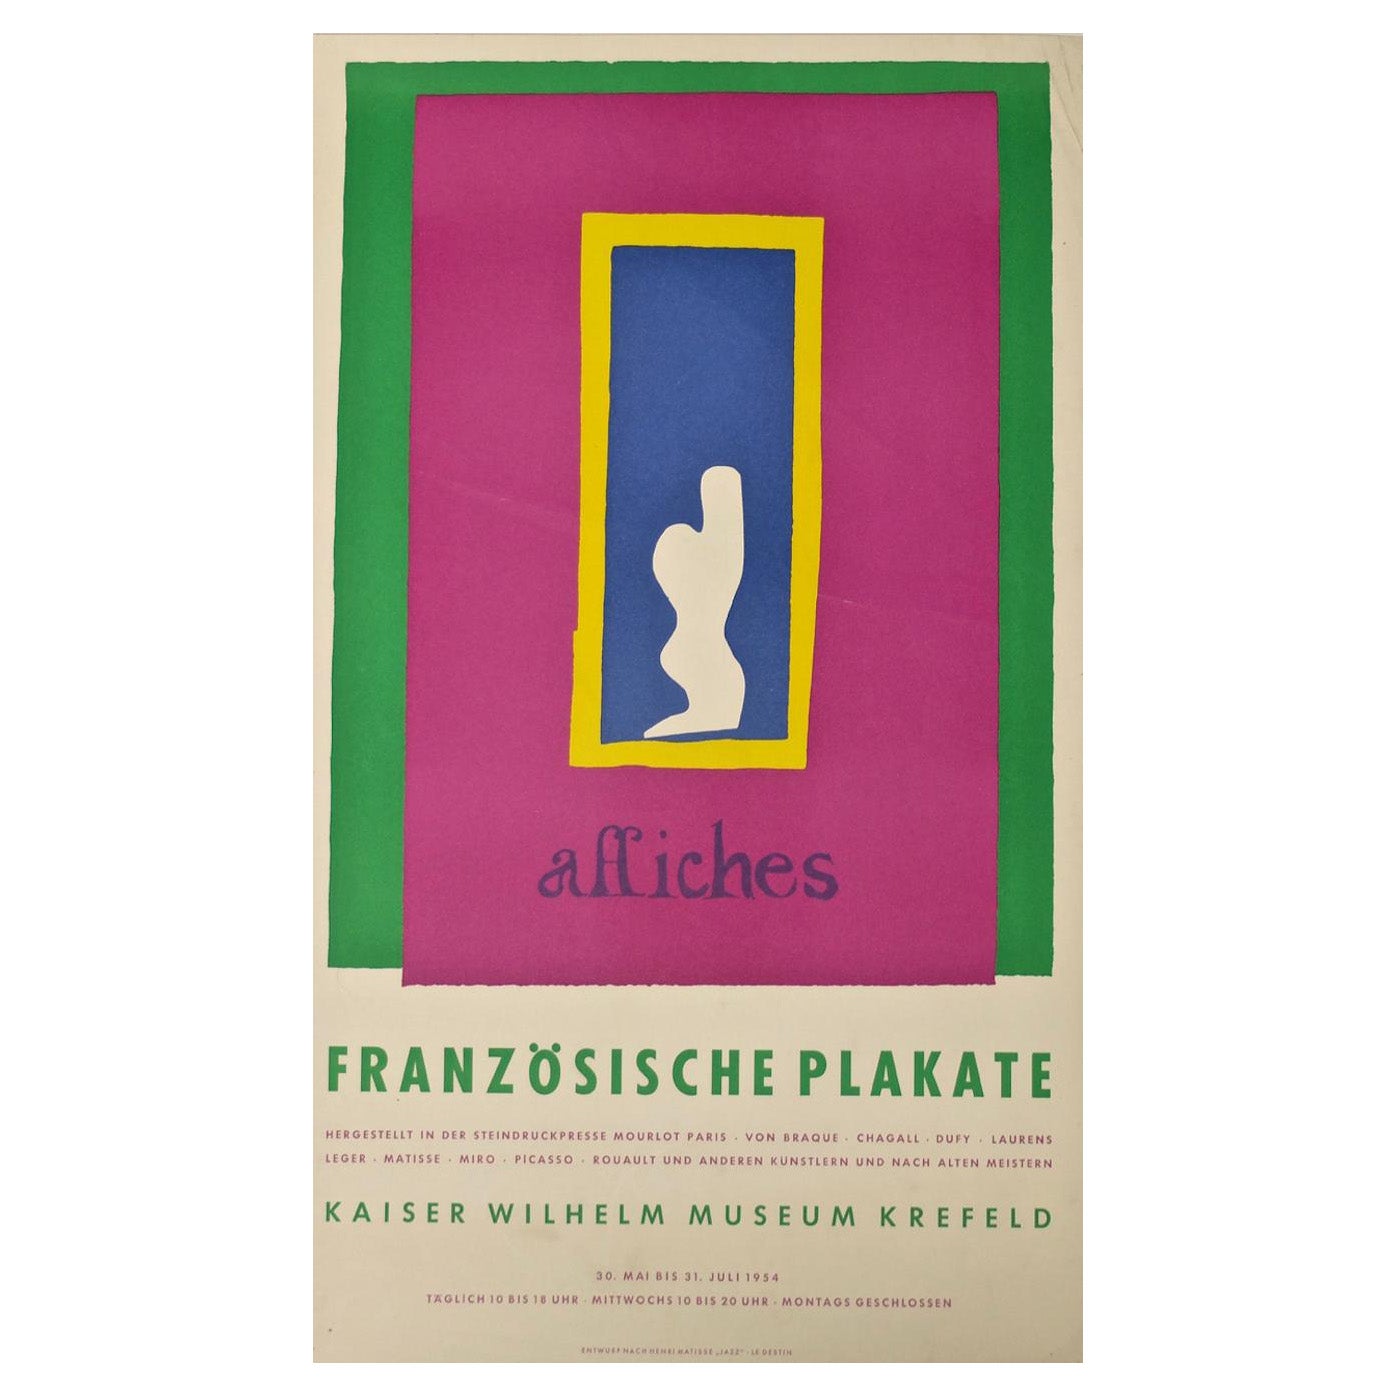 Henri Matisse, Affiches, Französische Plakate, Kaiser Wilhelm Museum, Krefe